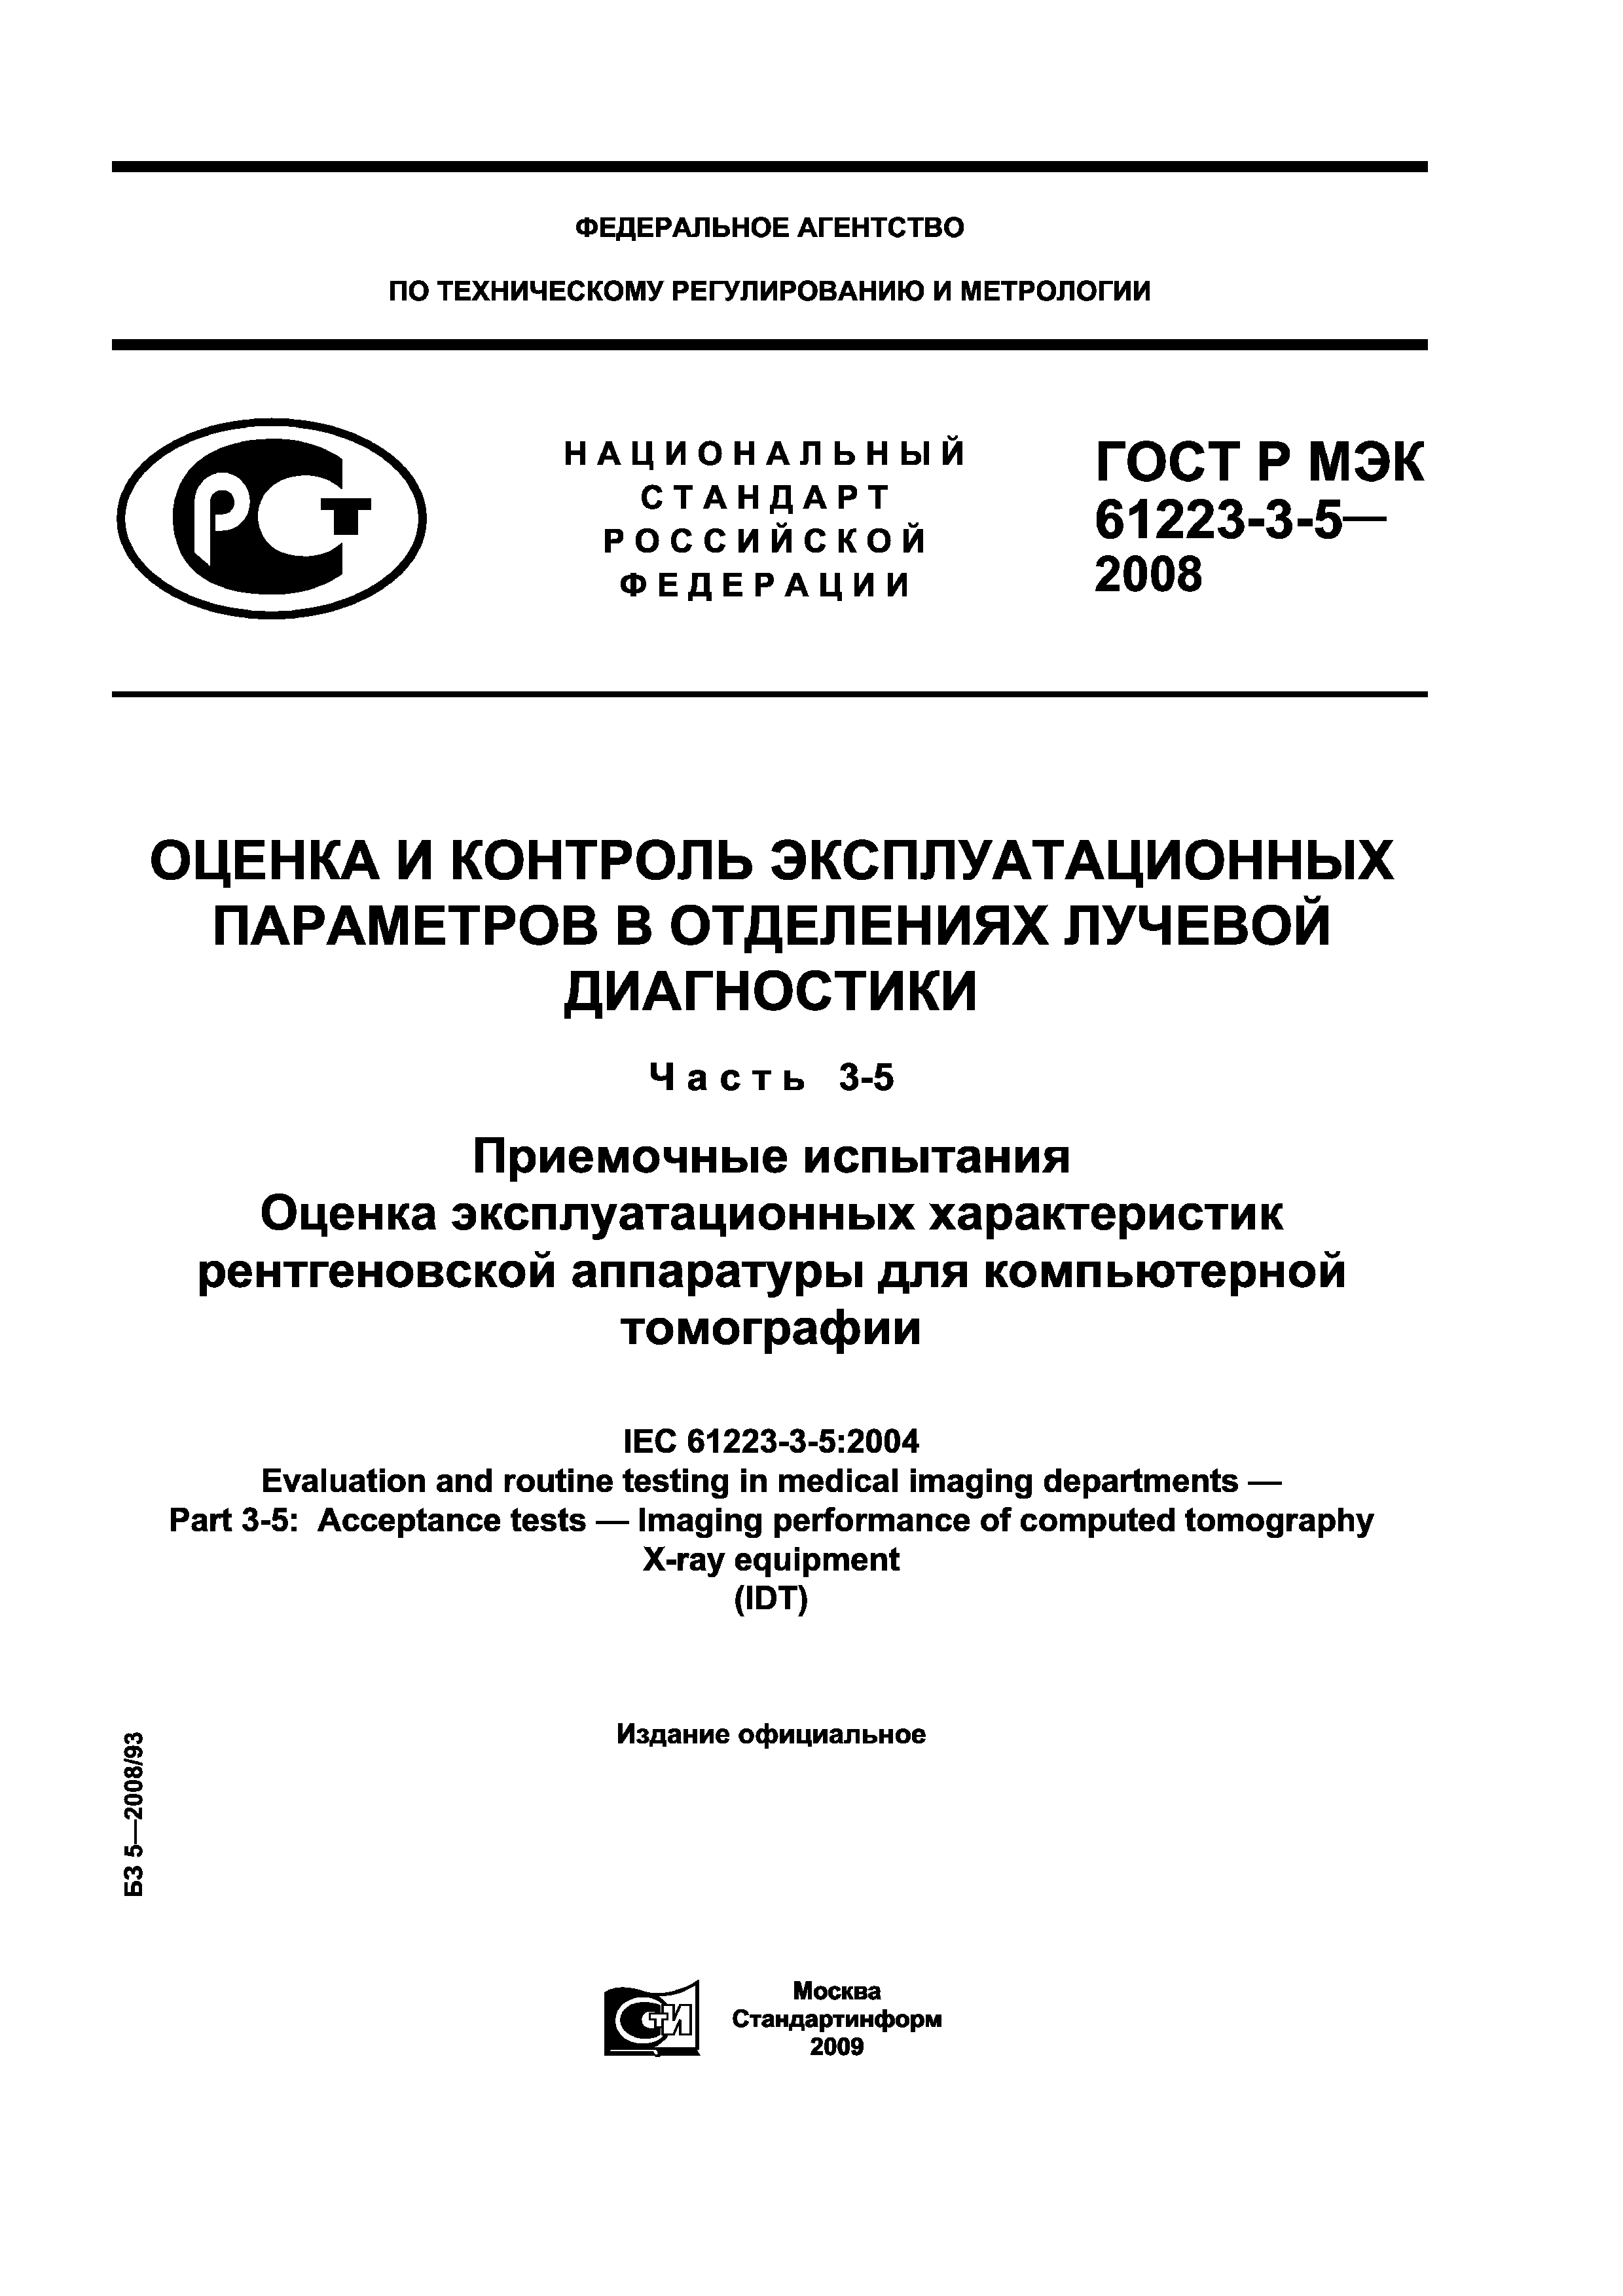 ГОСТ Р МЭК 61223-3-5-2008